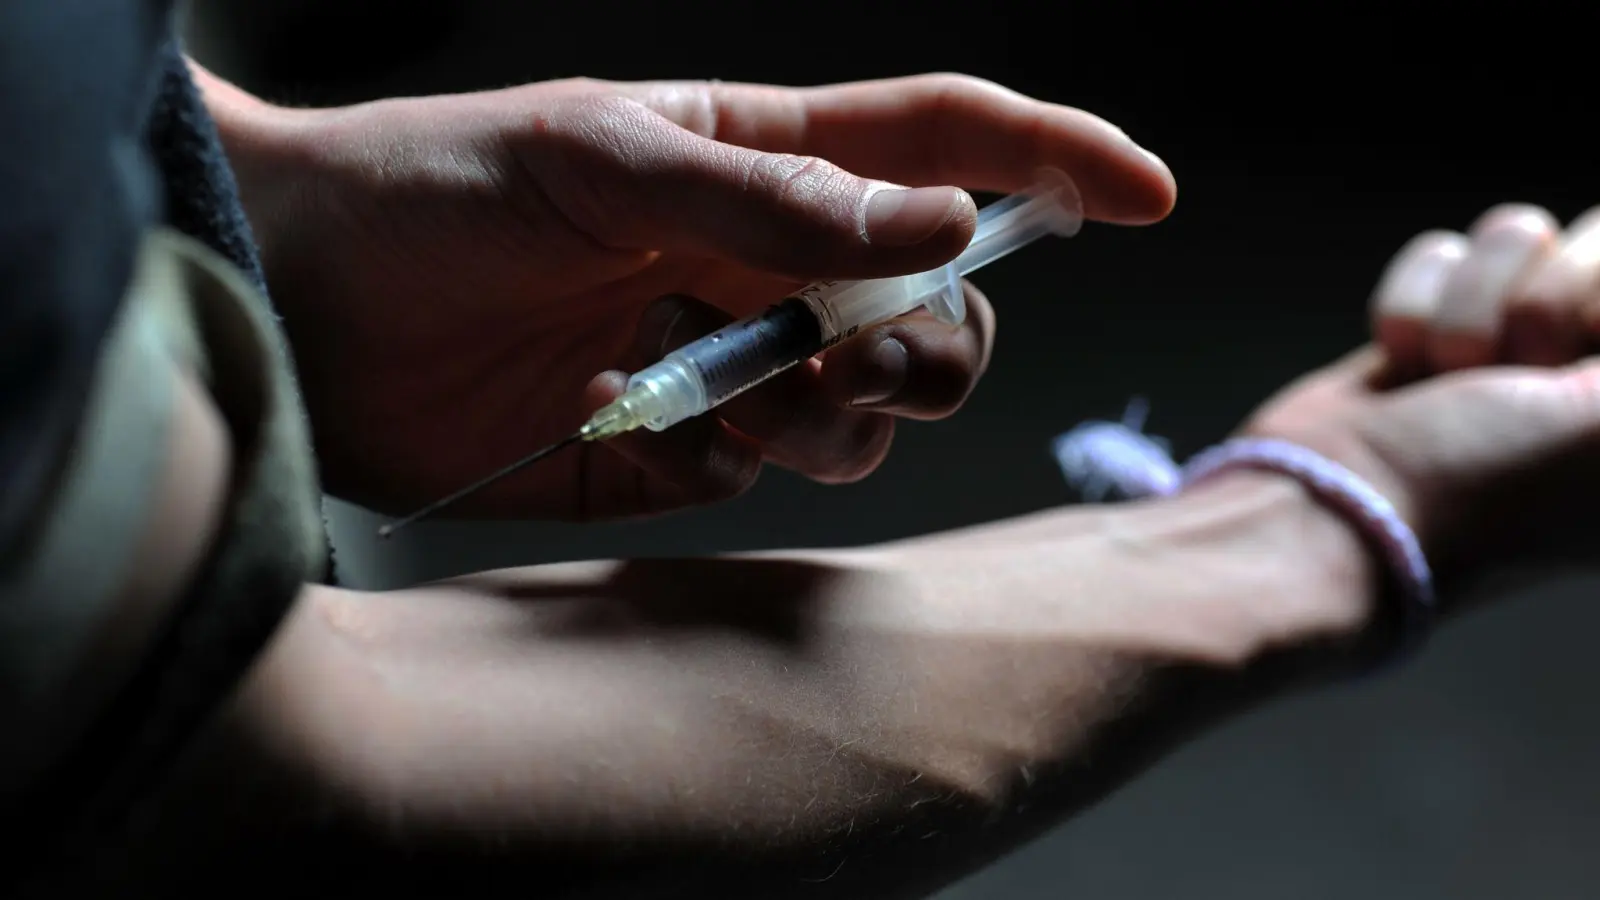 Ein Mann hält eine Heroinspritze an seinen Arm (Illustration). „Der Drogenkonsum wird in Europa schlimmer“, sagt EU-Innenkommissarin Ylva Johansson. (Bild: Frank Leonhardt/dpa)